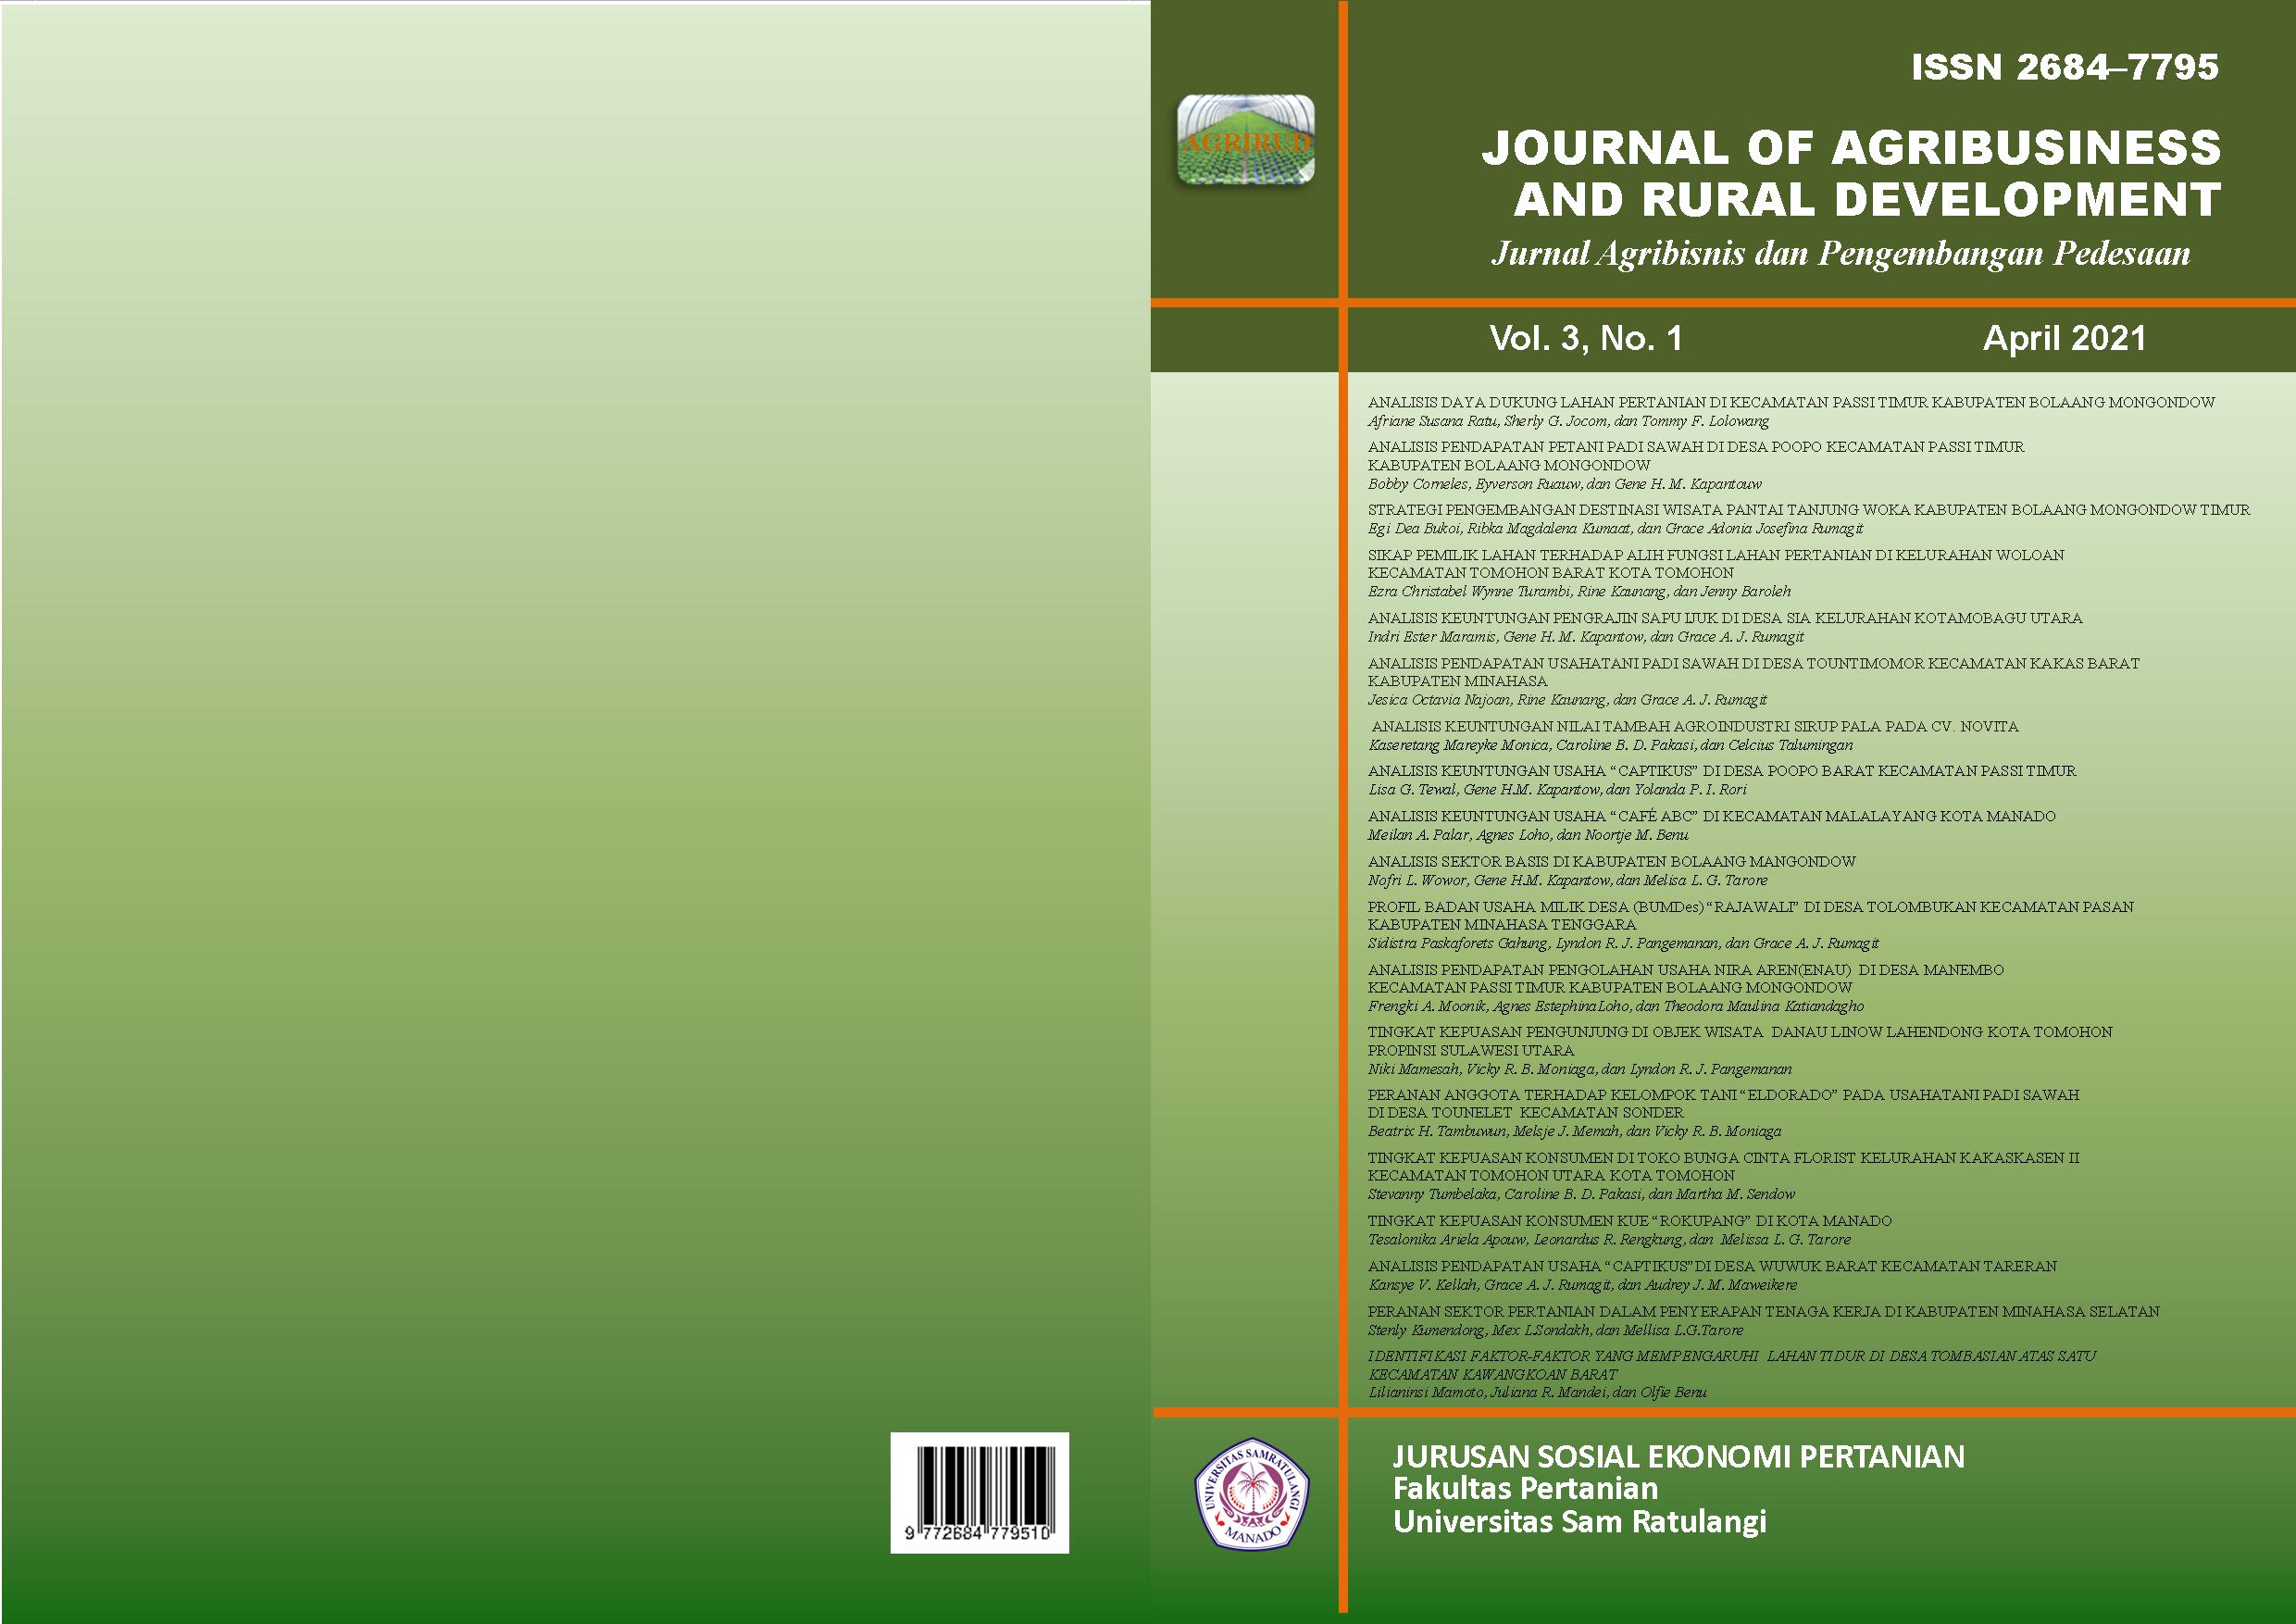 					View Vol. 3 No. 1 (2021): Journal of Agribusiness and Rural Development (Jurnal Agribisnis dan Pengembangan Pedesaan) - April 2021
				